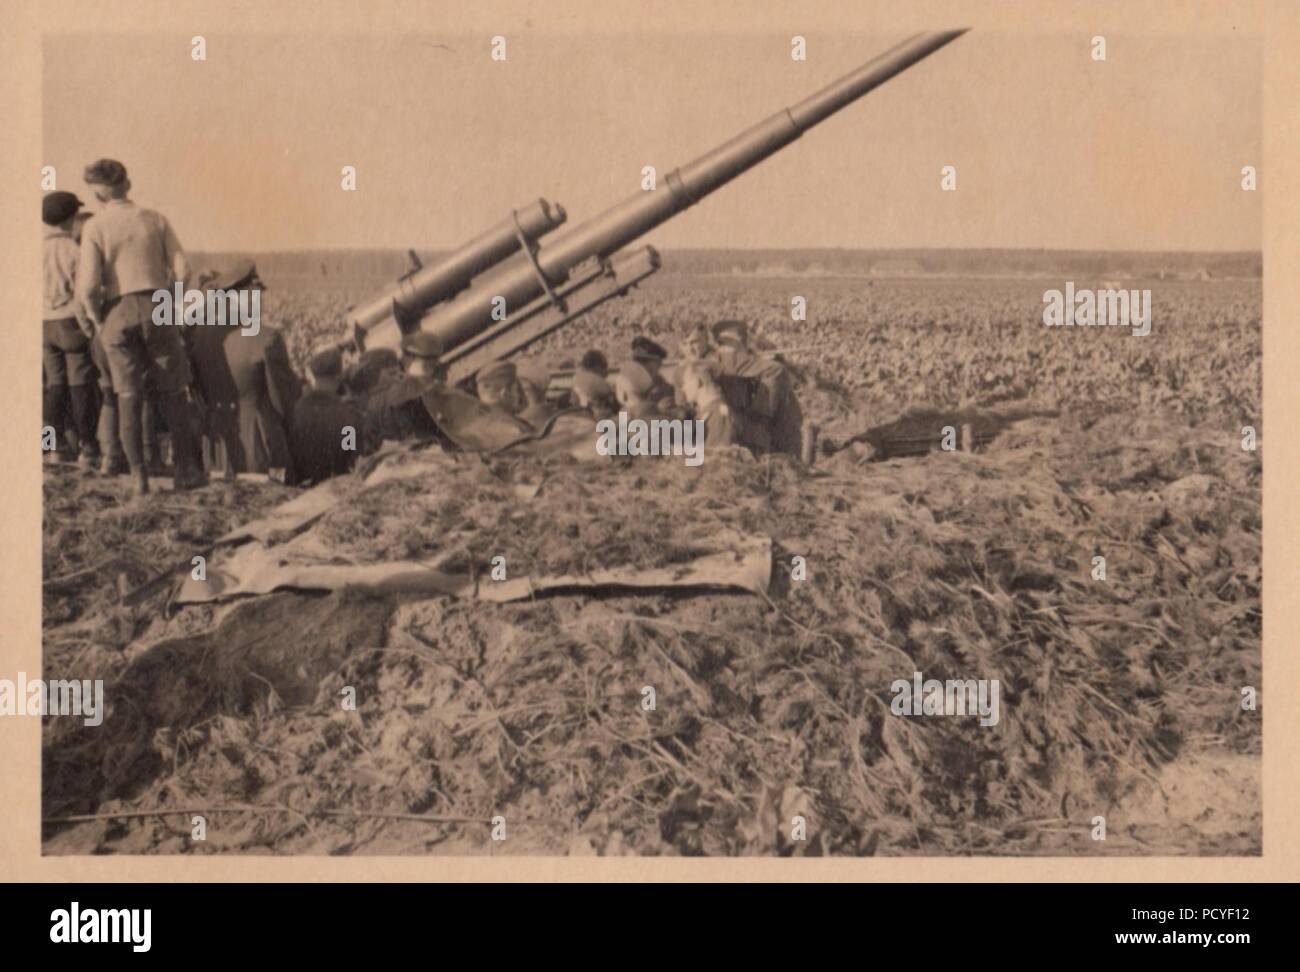 Image from the photo album of Oberfeldwebel Gotthilf Benseler of 9. Staffel, Kampfgeschwader 3: An 88mm anti-aircraft gun emplacement, defending an airfield. Stock Photo